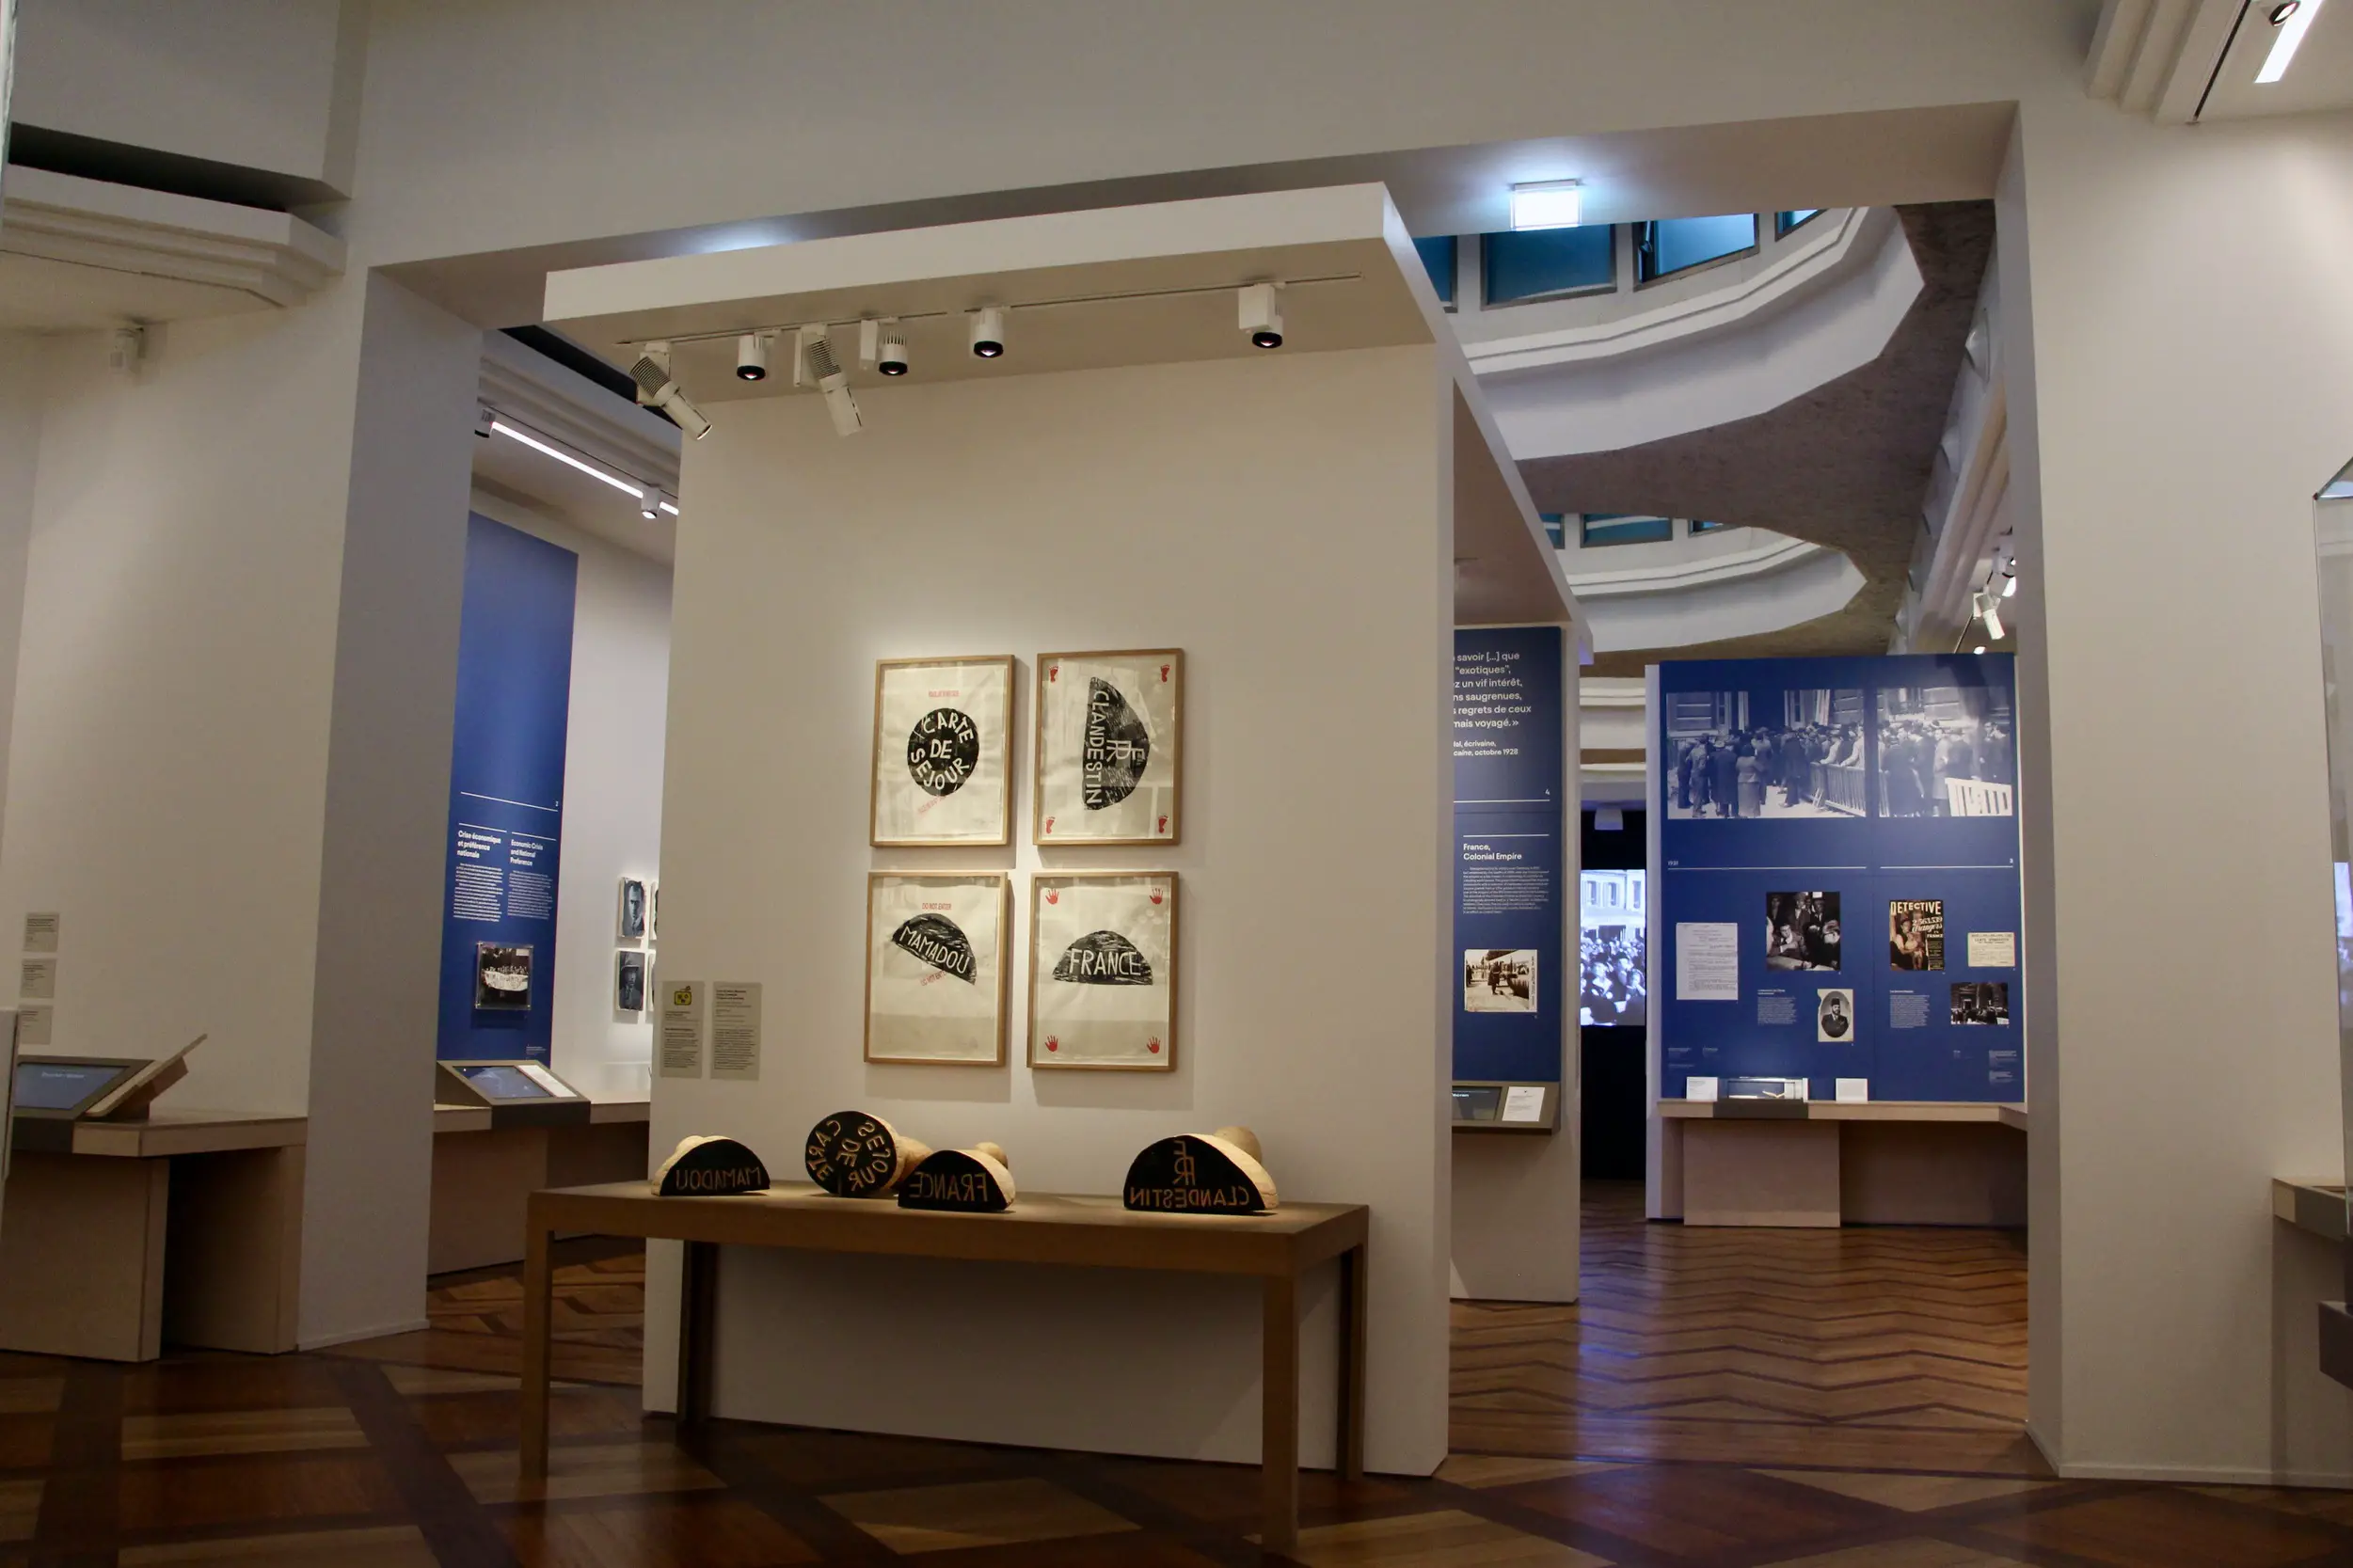 An exhibit at the Musée de l'histoire de l'immigration in Paris, France.